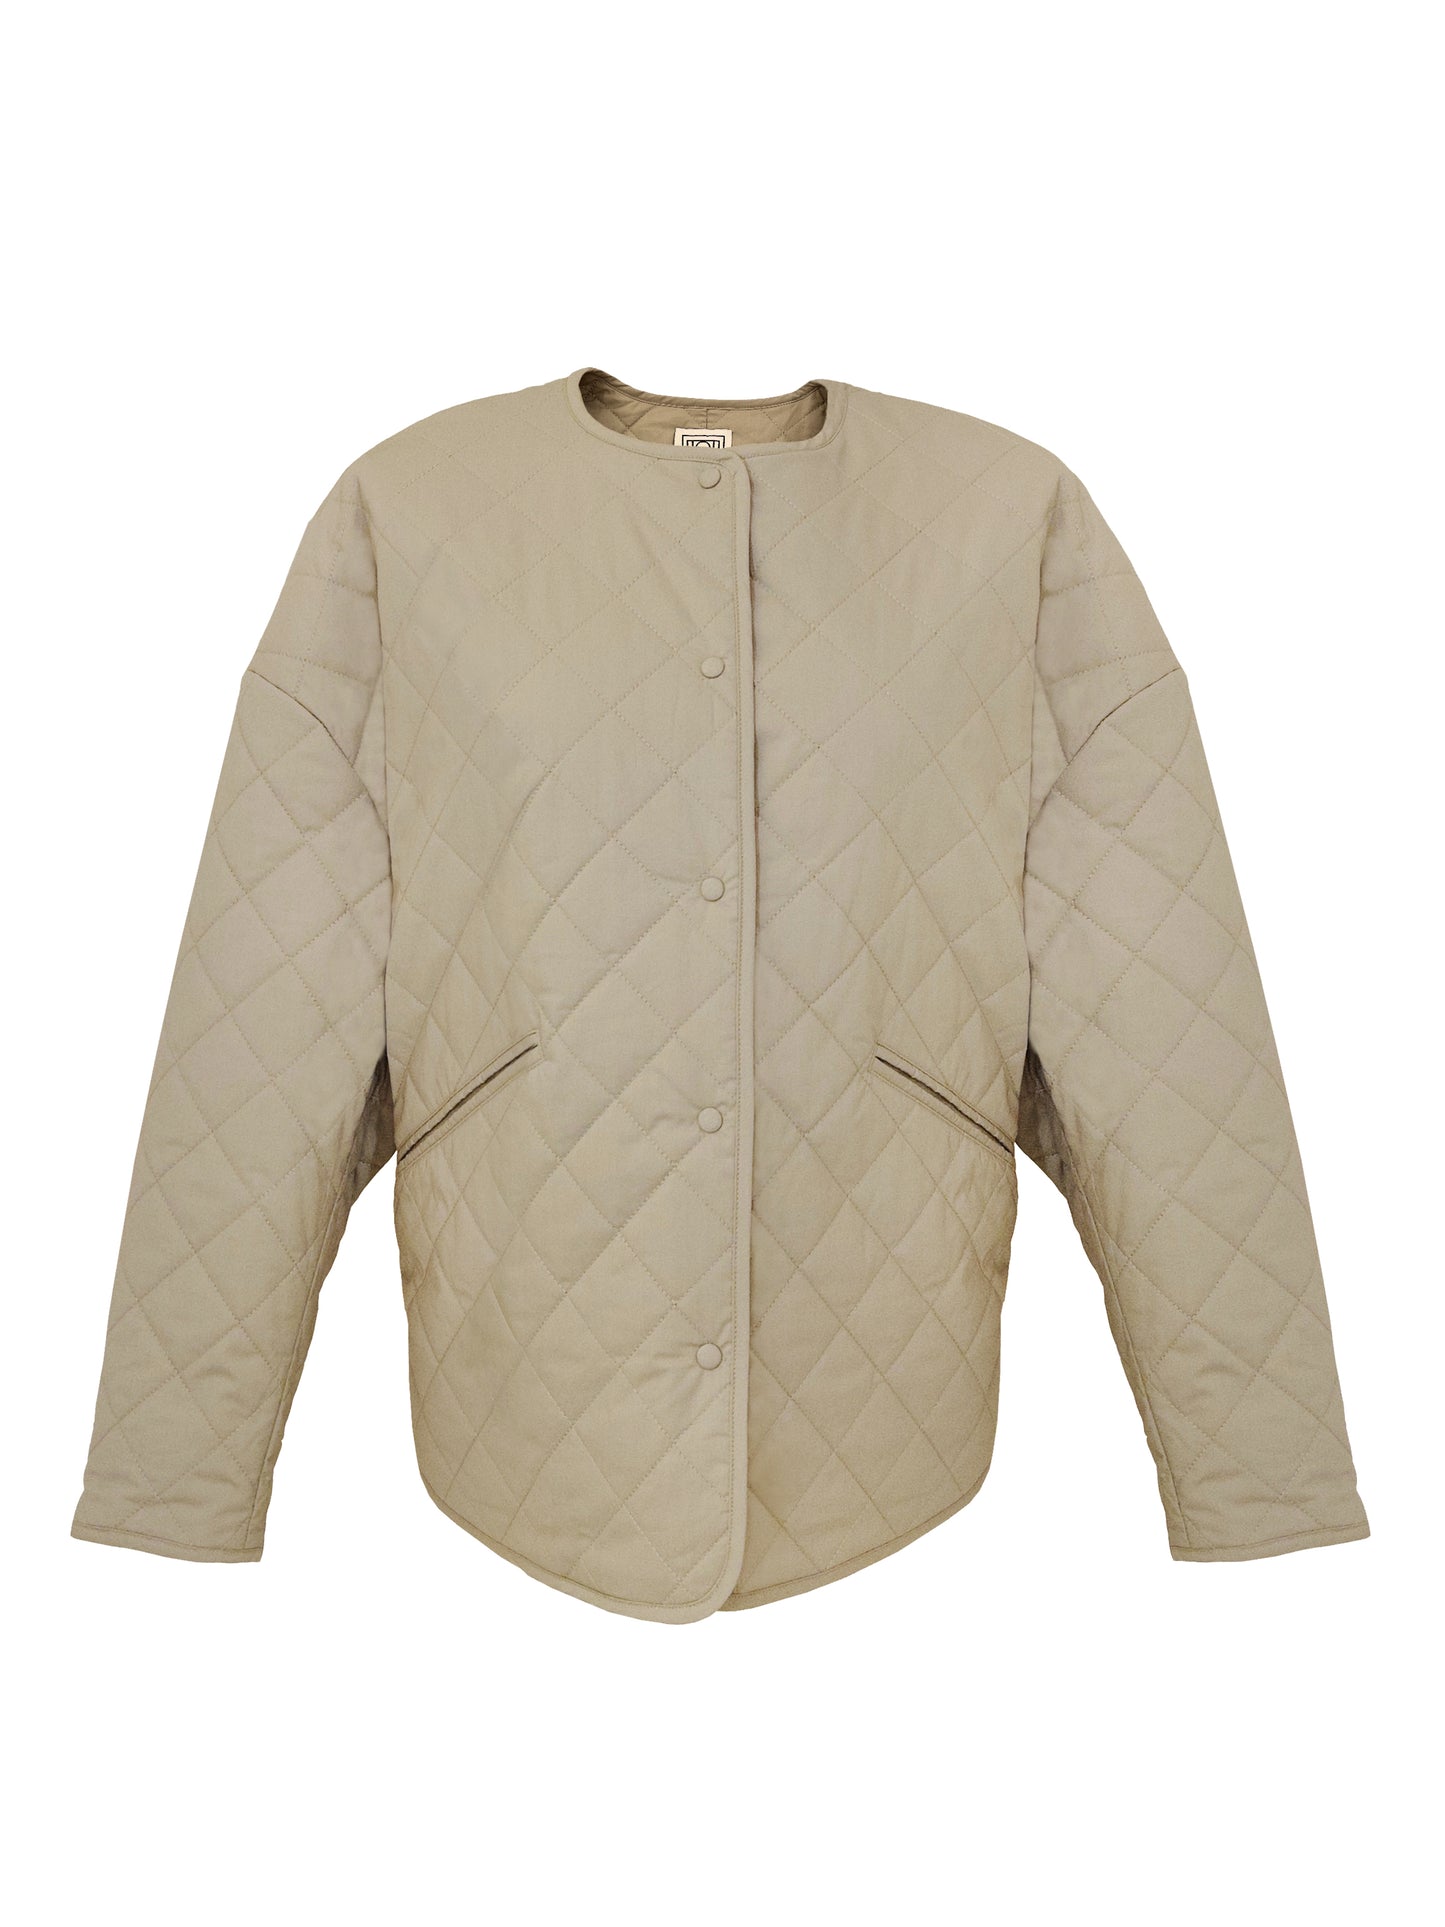 Das schlichte und klassische Design von TOTEME zeigt sich auch wieder in diesem stylischen Jacke, welcher besonders durch seinen weichen Stoff und der Liebe zum Detail überzeugt.   Wir würden ihn bspw. mit einer schlichten Jeans von Jil Sander und einer beigen Tasche von Patou kombinieren 